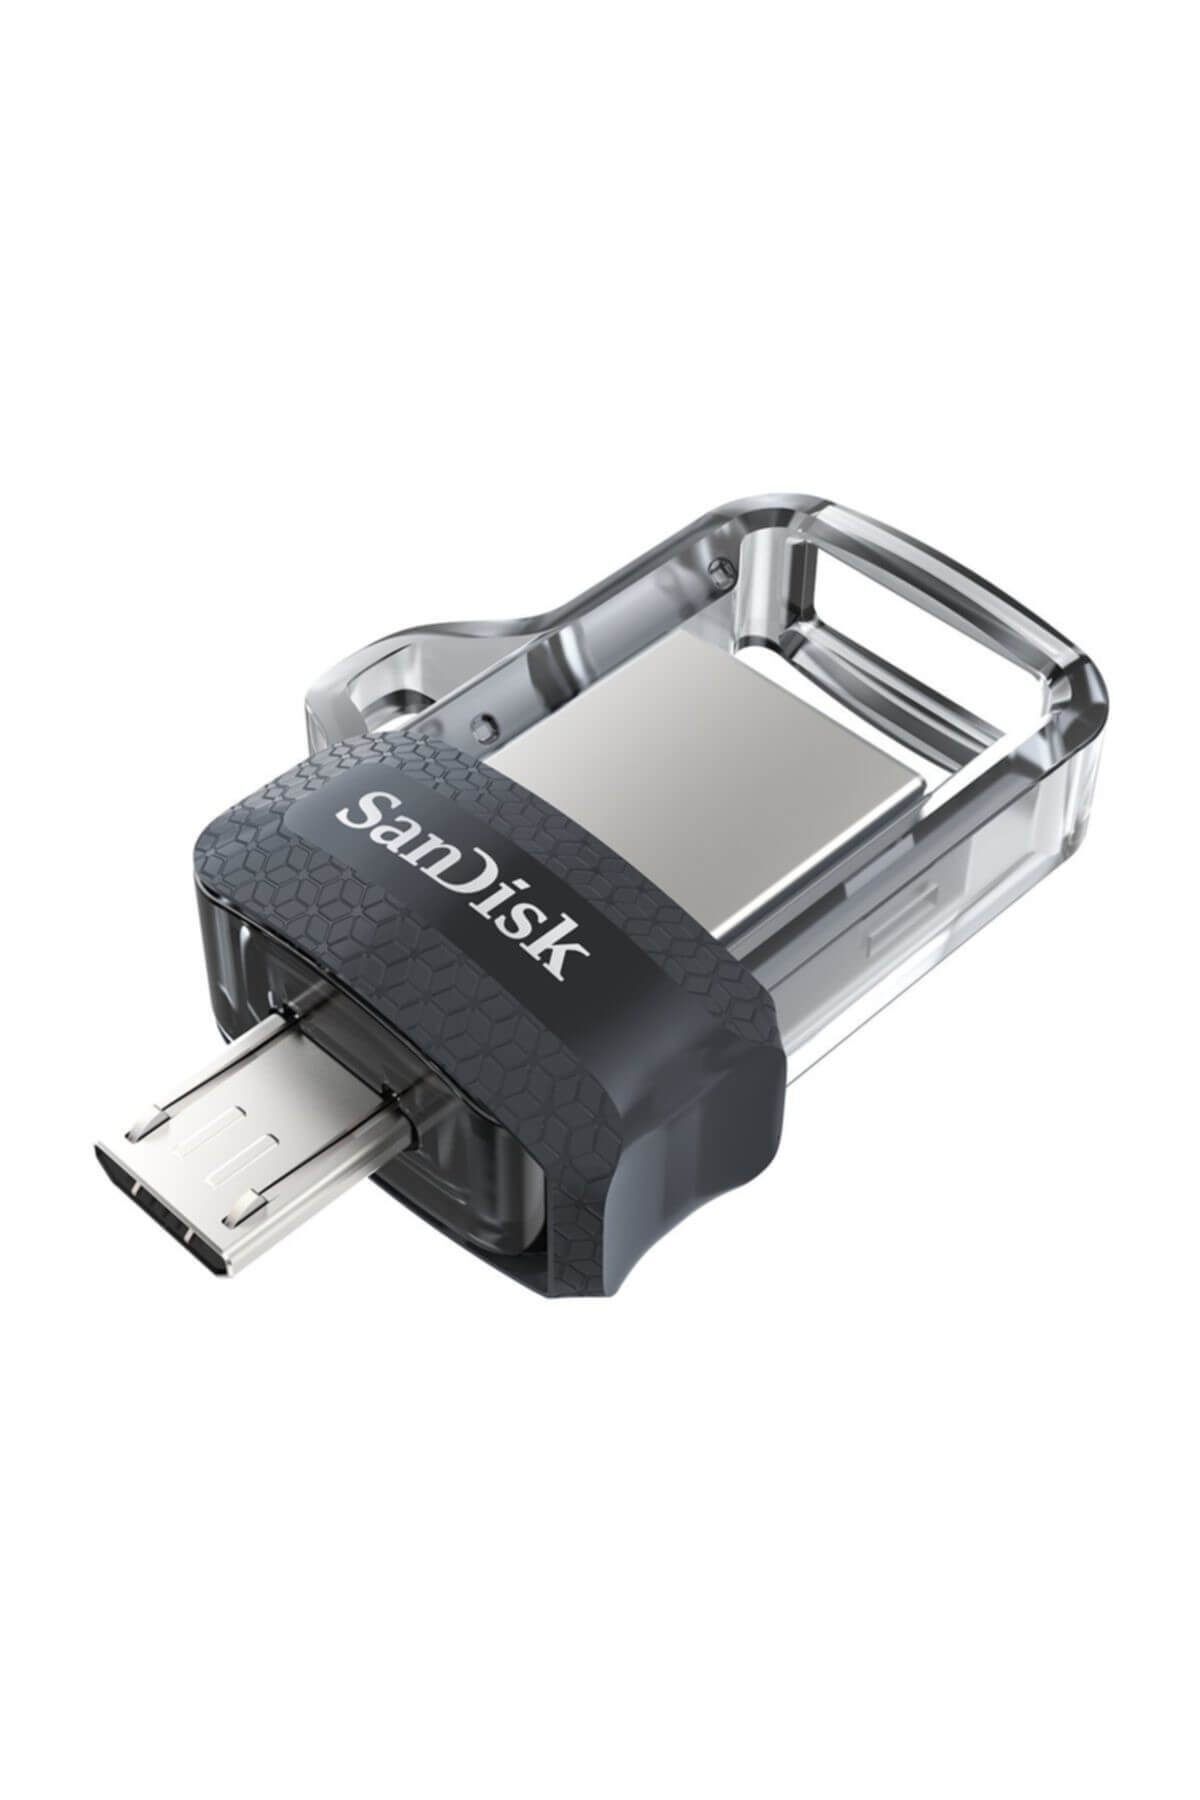 Sandisk 256 GB Ultra Dual Drive m3.0 Usb Bellek SDDD3-256G-G46